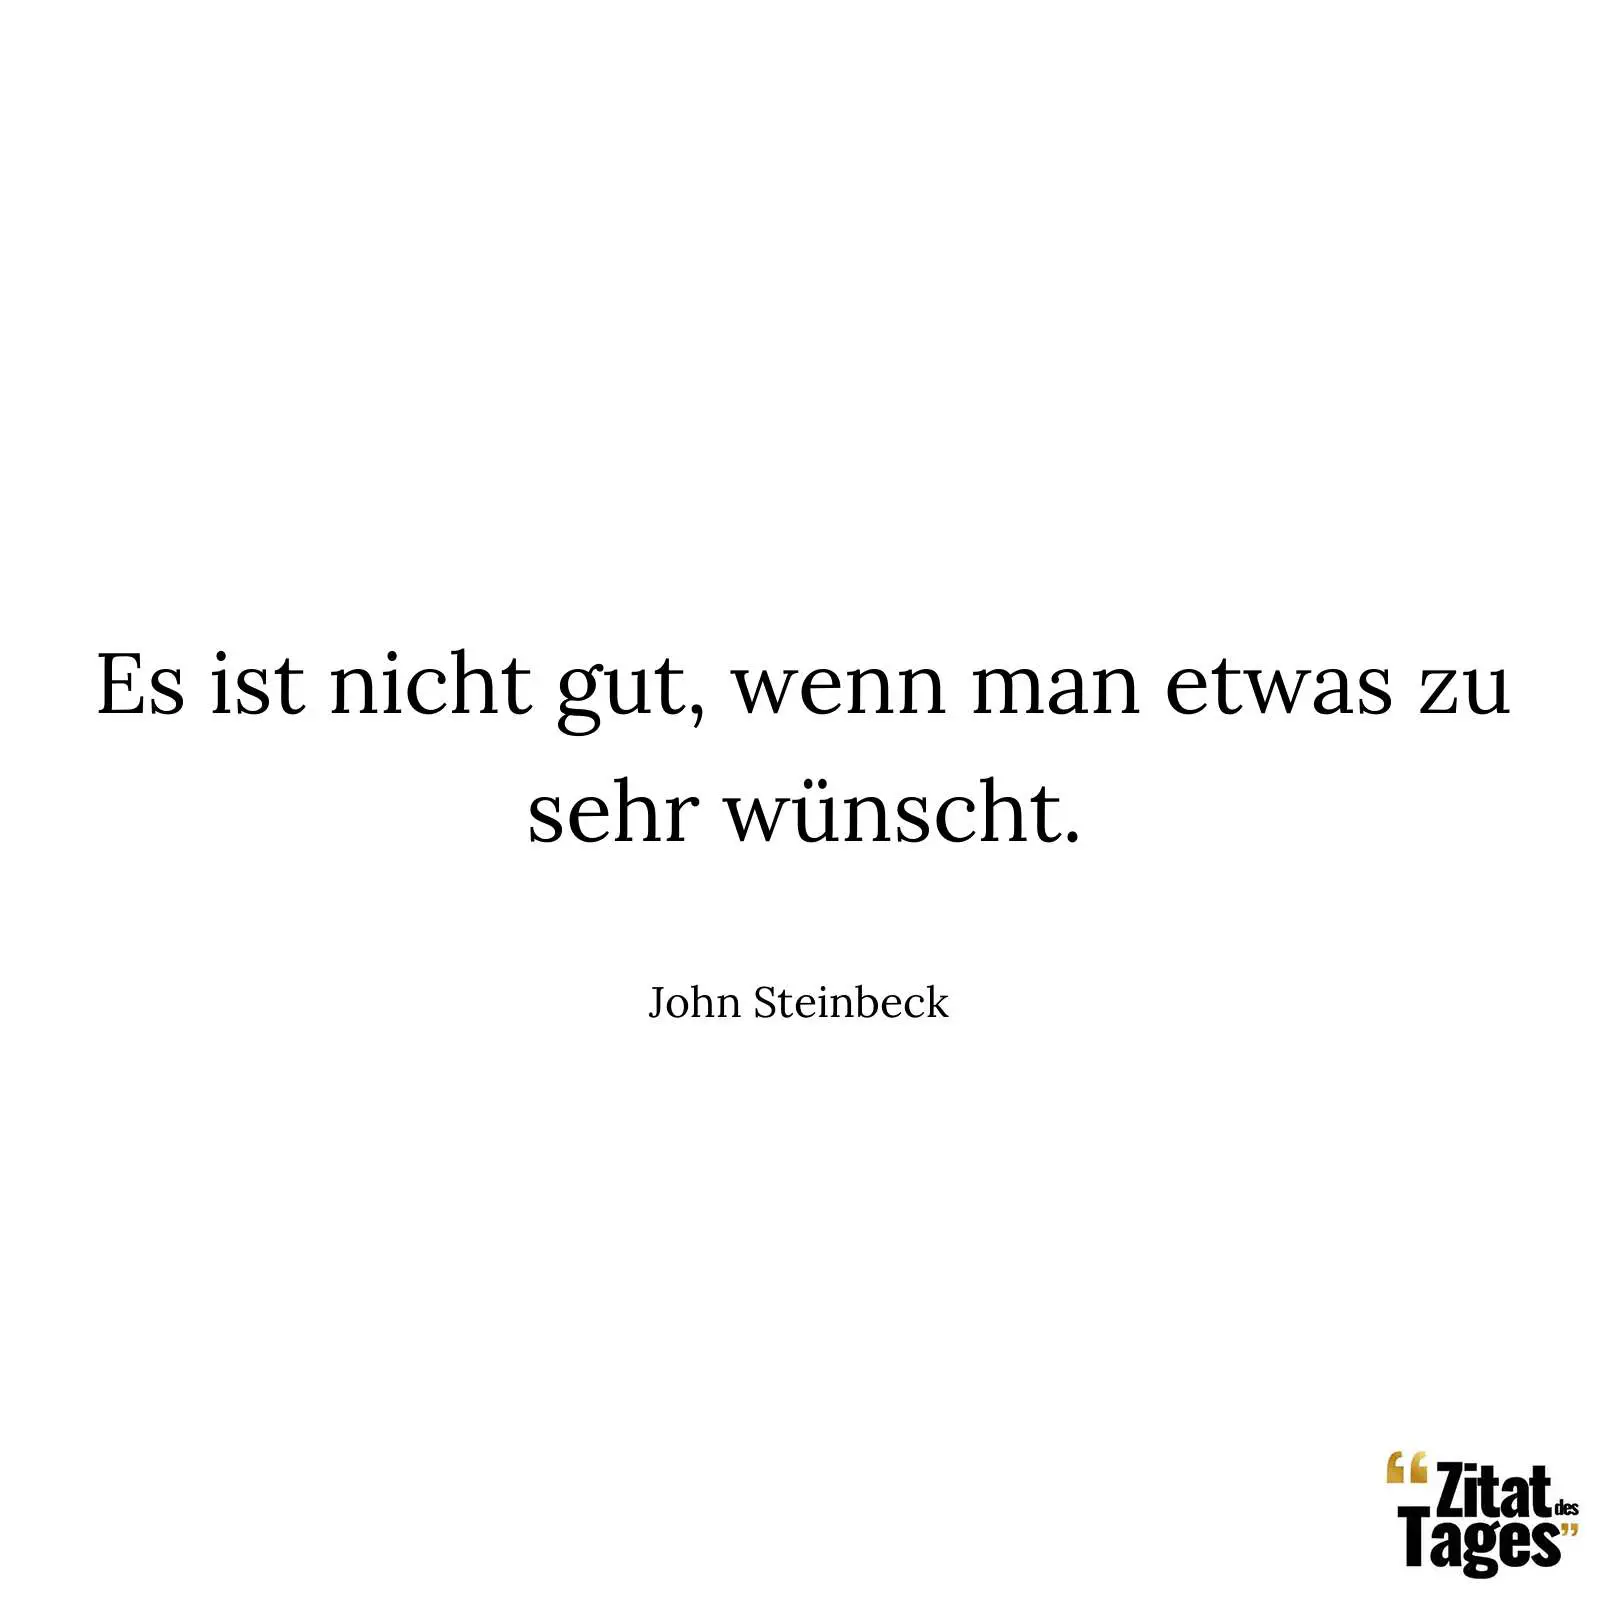 Es ist nicht gut, wenn man etwas zu sehr wünscht. - John Steinbeck